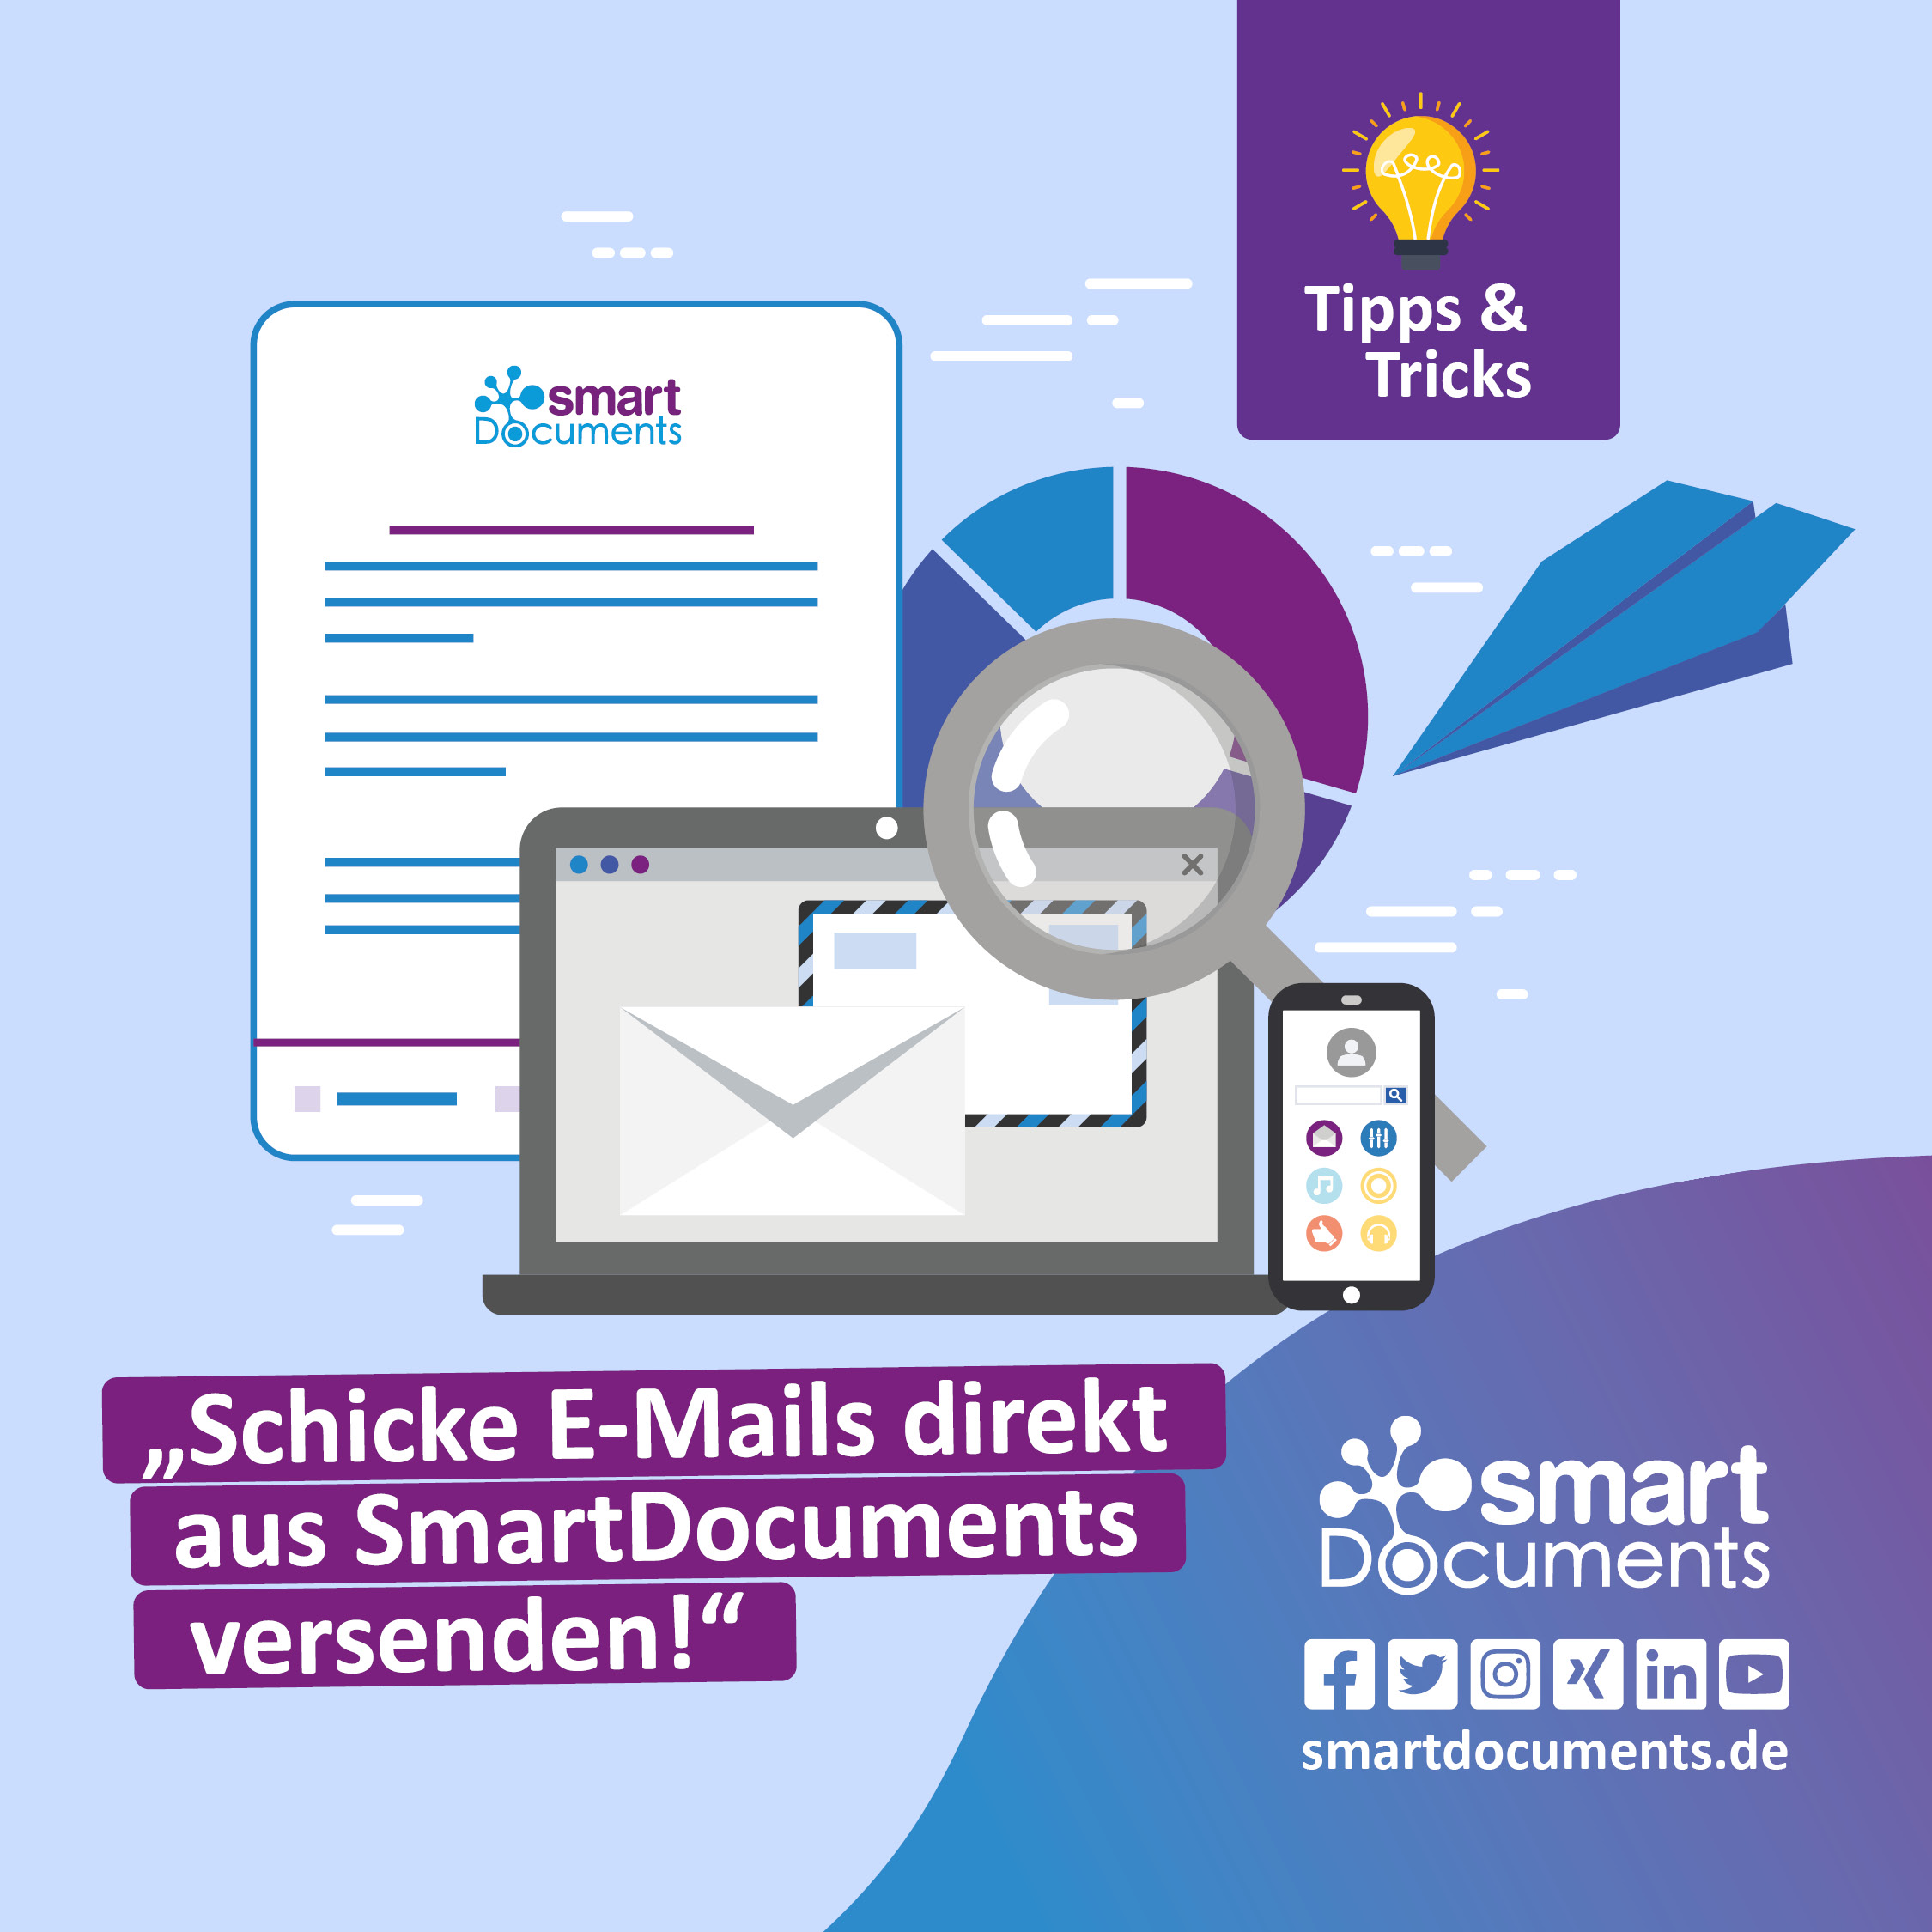 Vektorgrafik, E-Mail, Dokument, Rechner und Smartphone mit Text: "Tipps und Tricks: Wie Sie schicke E-Mails direkt aus SmartDocuments versenden!" sowie dem Logo SmartDocuments